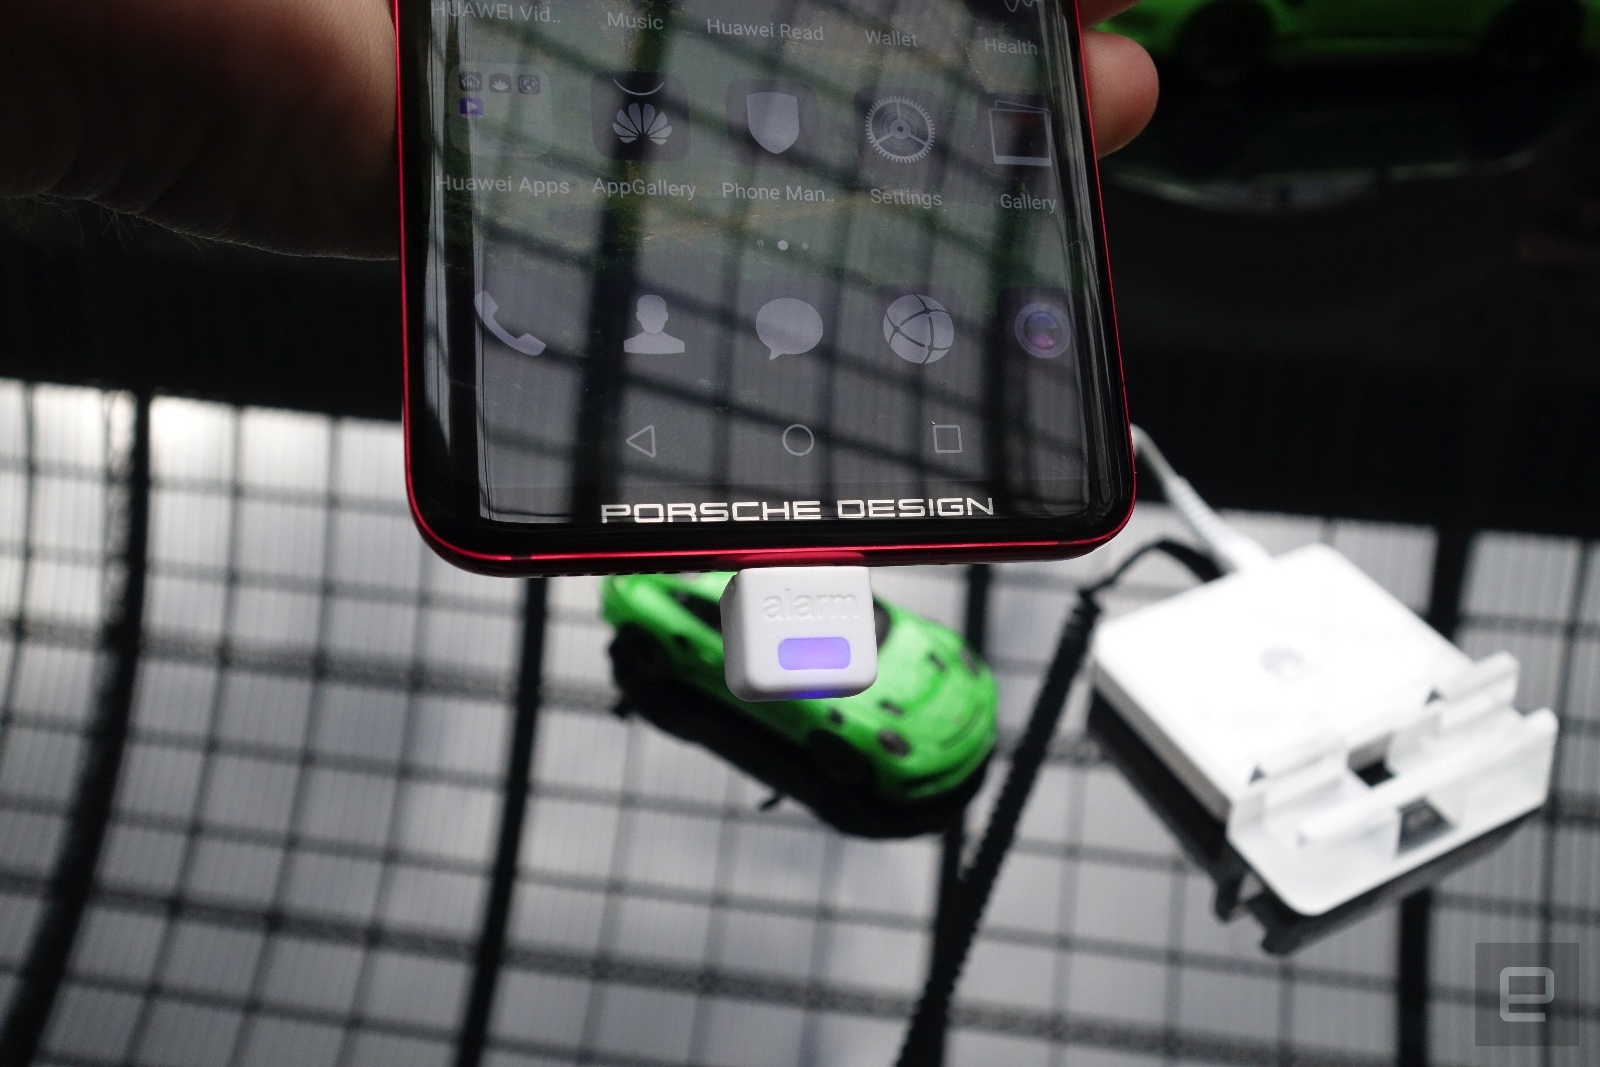 Cận cảnh Huawei Mate RS Porsche Design 60 triệu:
Sang trọng, vân tay kép, không tai thỏ